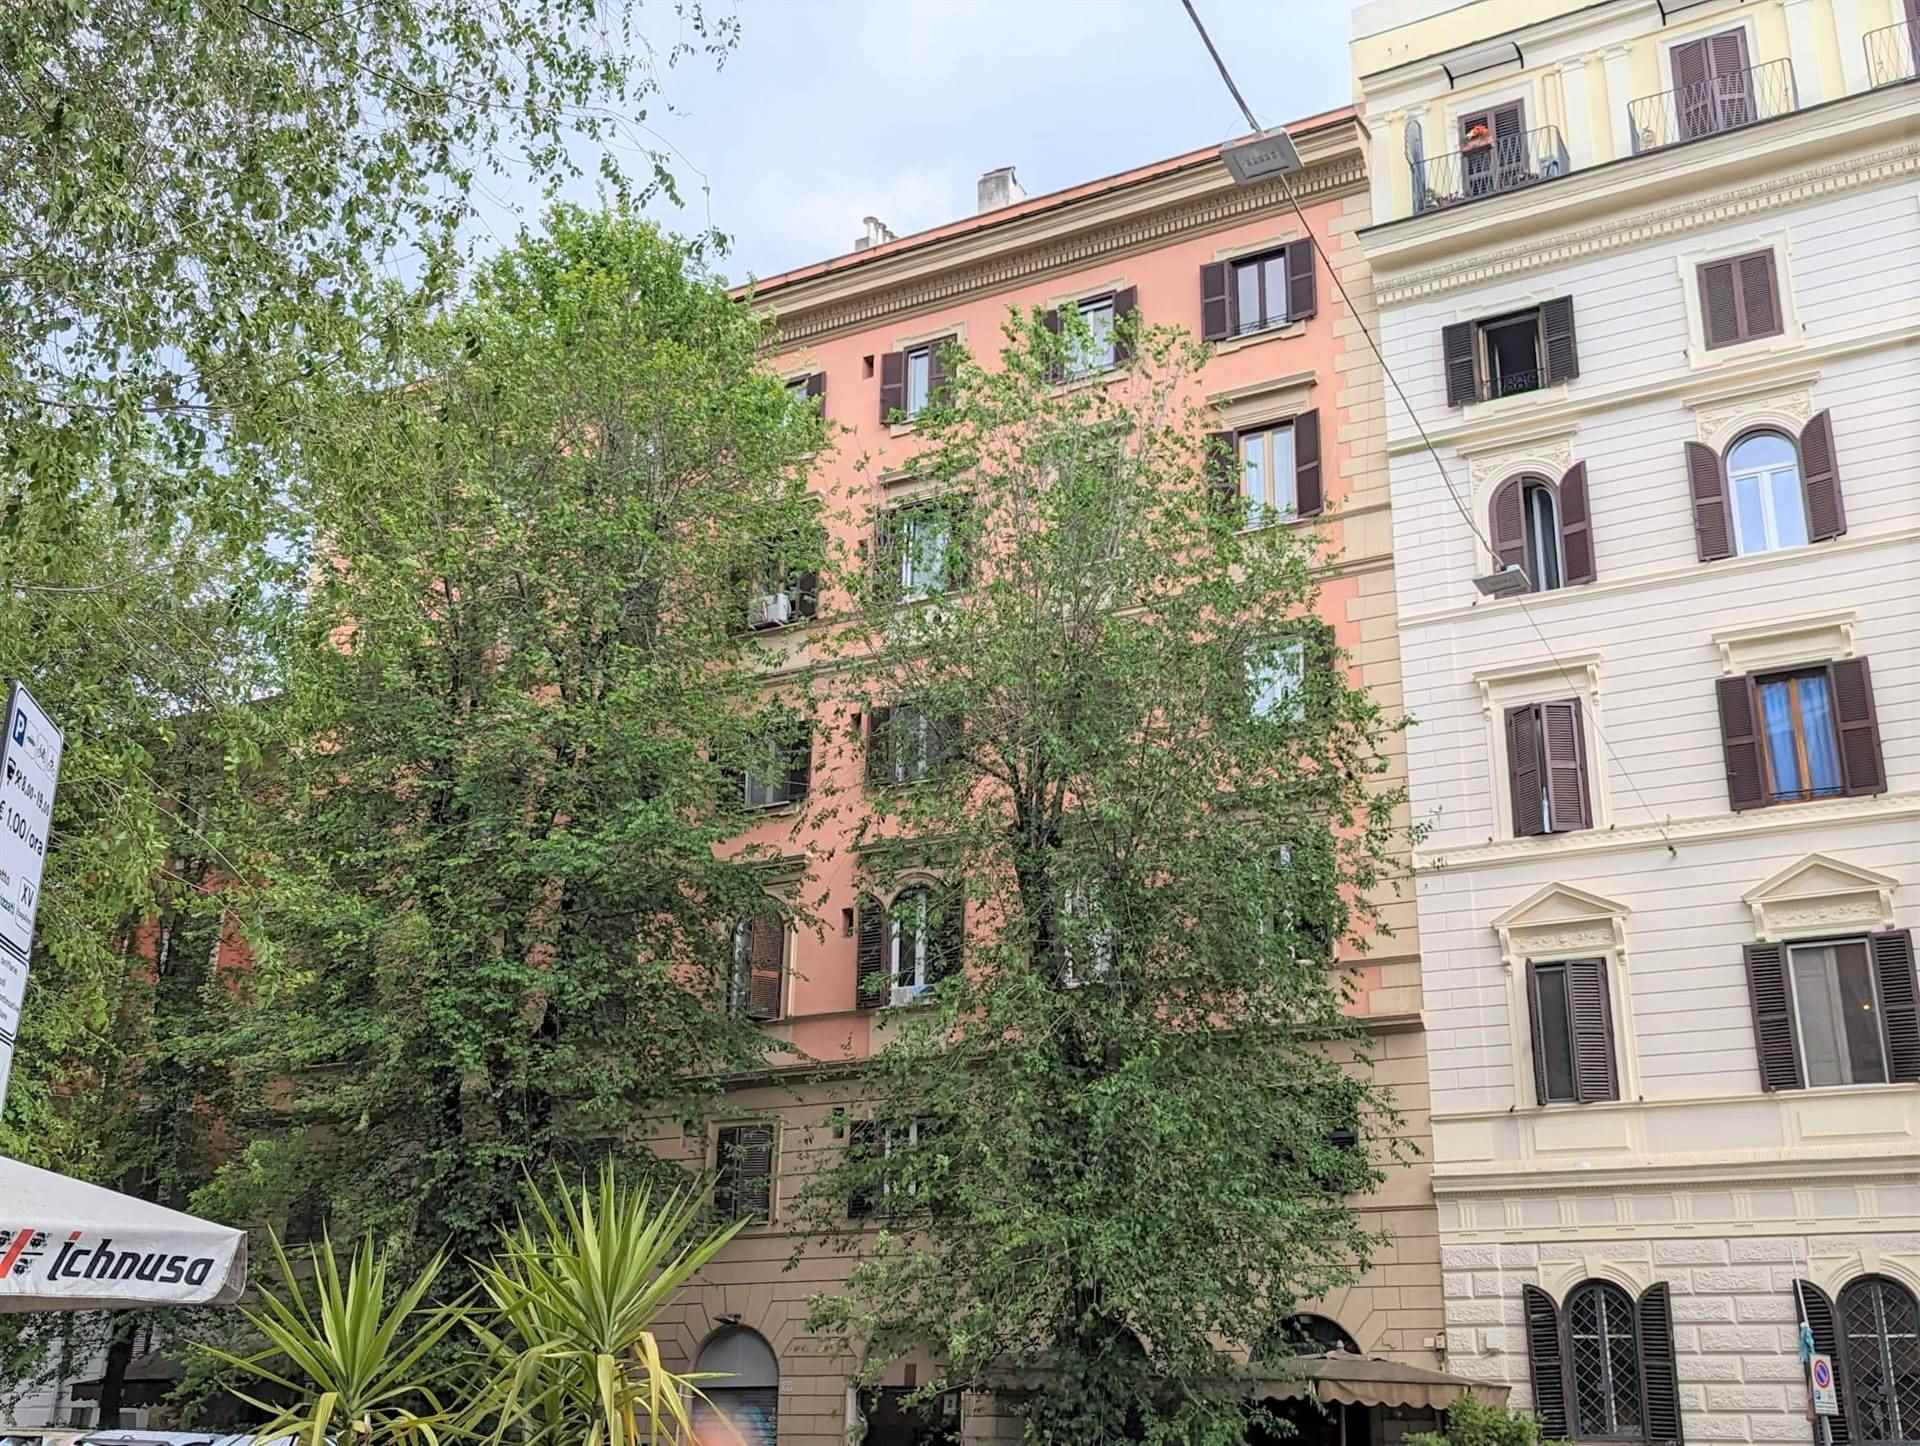 ESQUILINO, ROMA, Wohnung zu verkaufen von 50 Qm, Bewohnbar, Heizung Zentralisiert, Energie-klasse: G, am boden 2° auf 6, zusammengestellt von: 2 